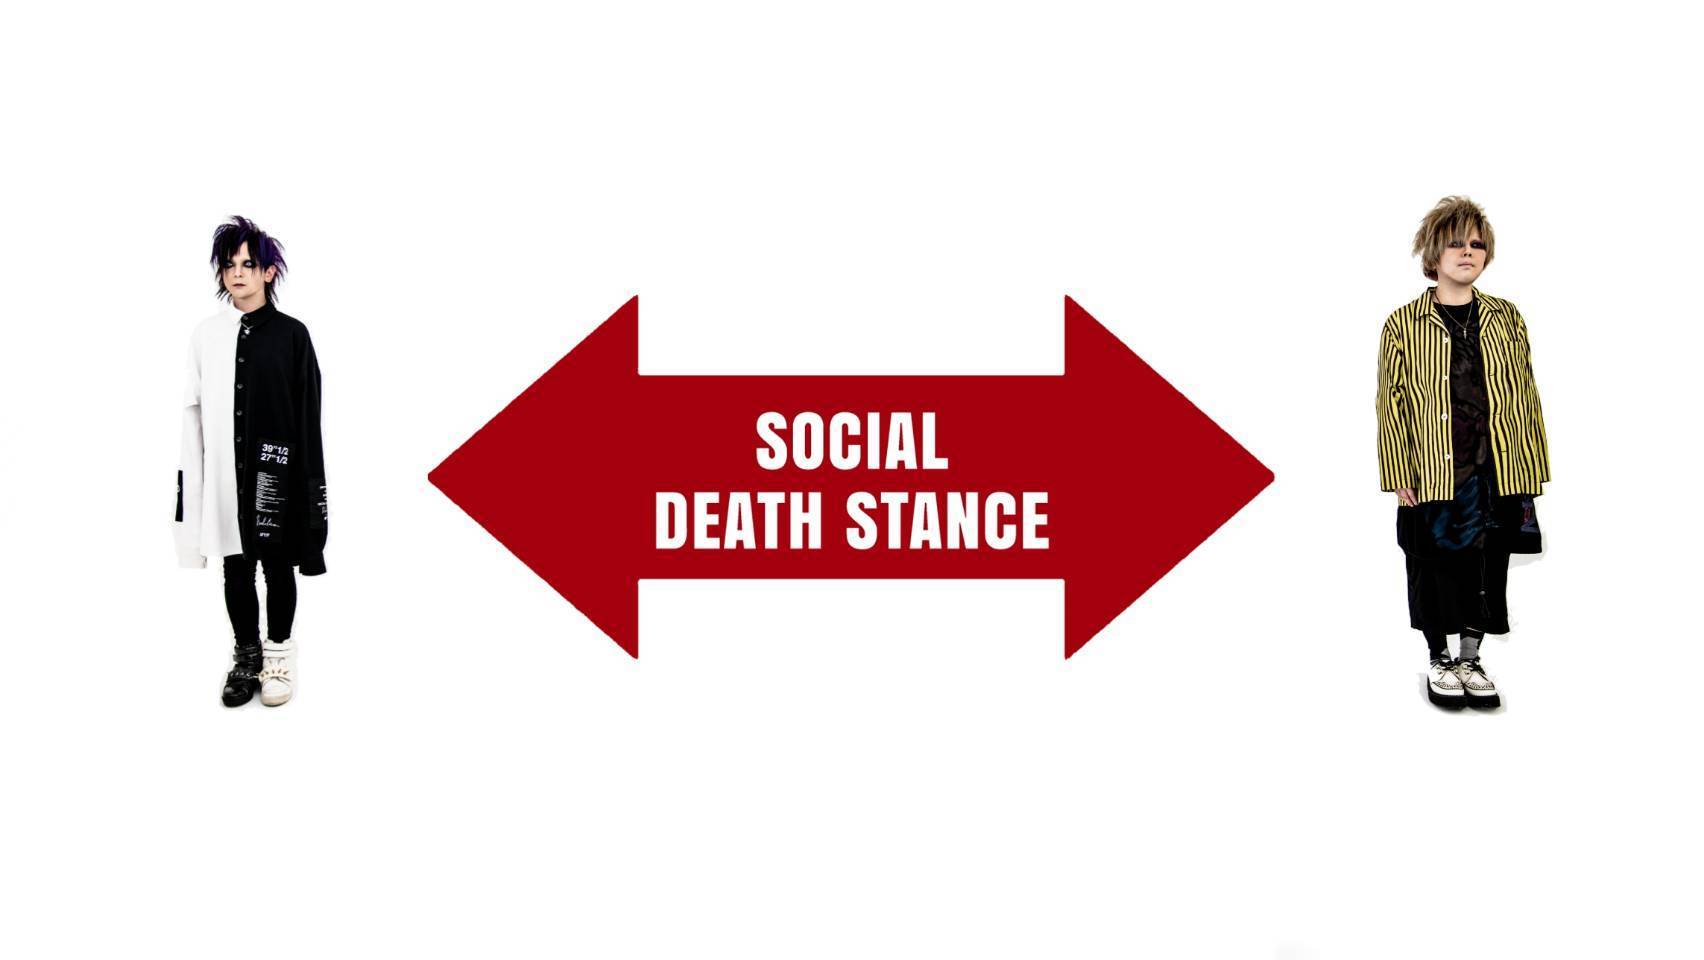 SHOP DEATH STANCE